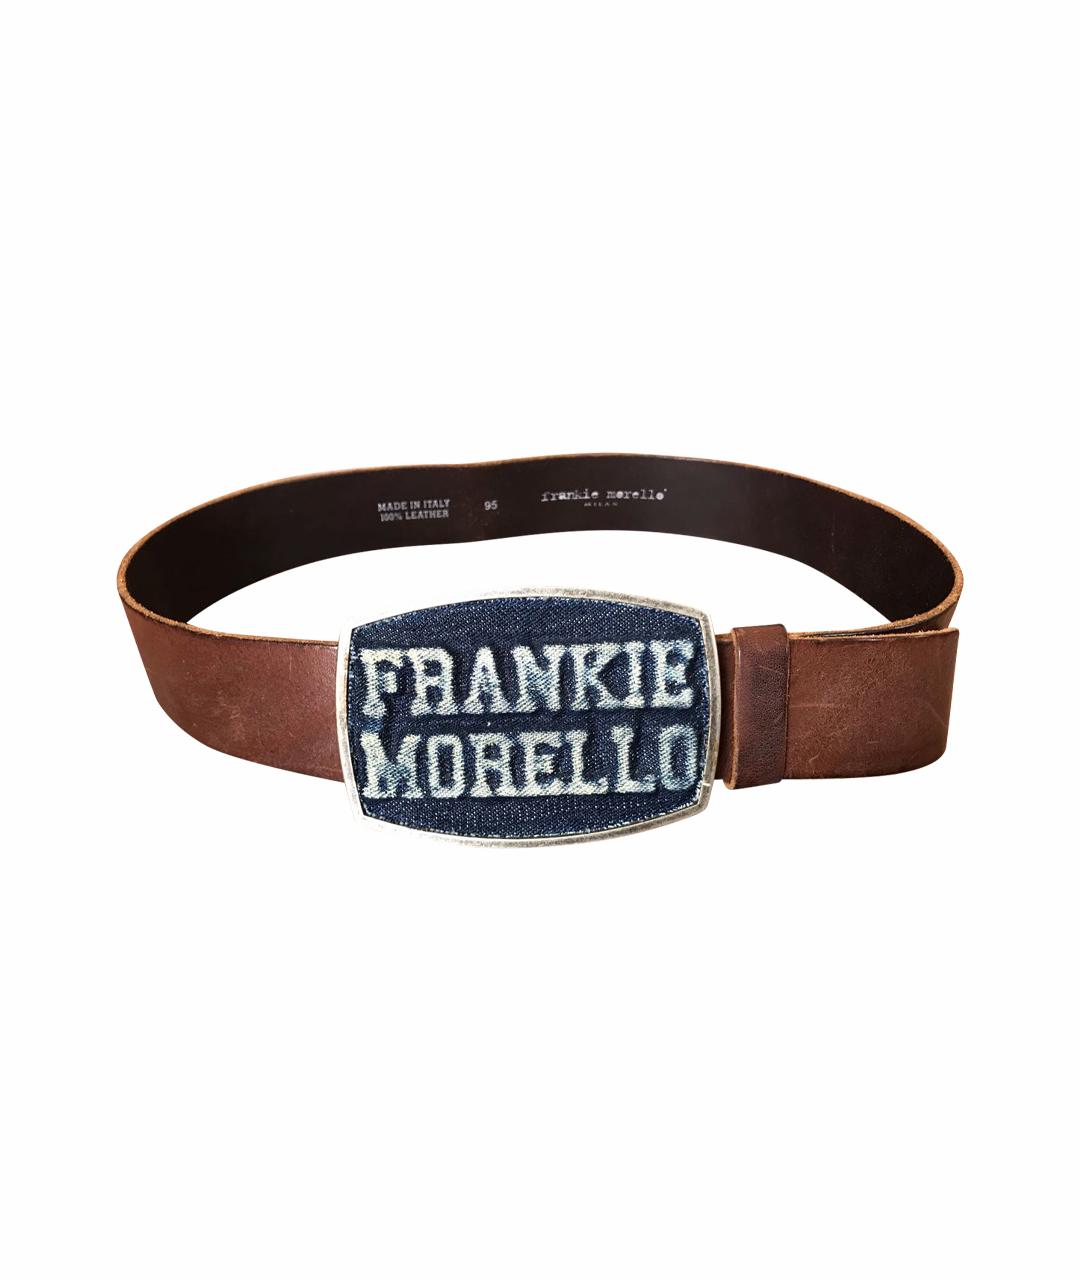 FRANKIE MORELLO Коричневый кожаный ремень, фото 1